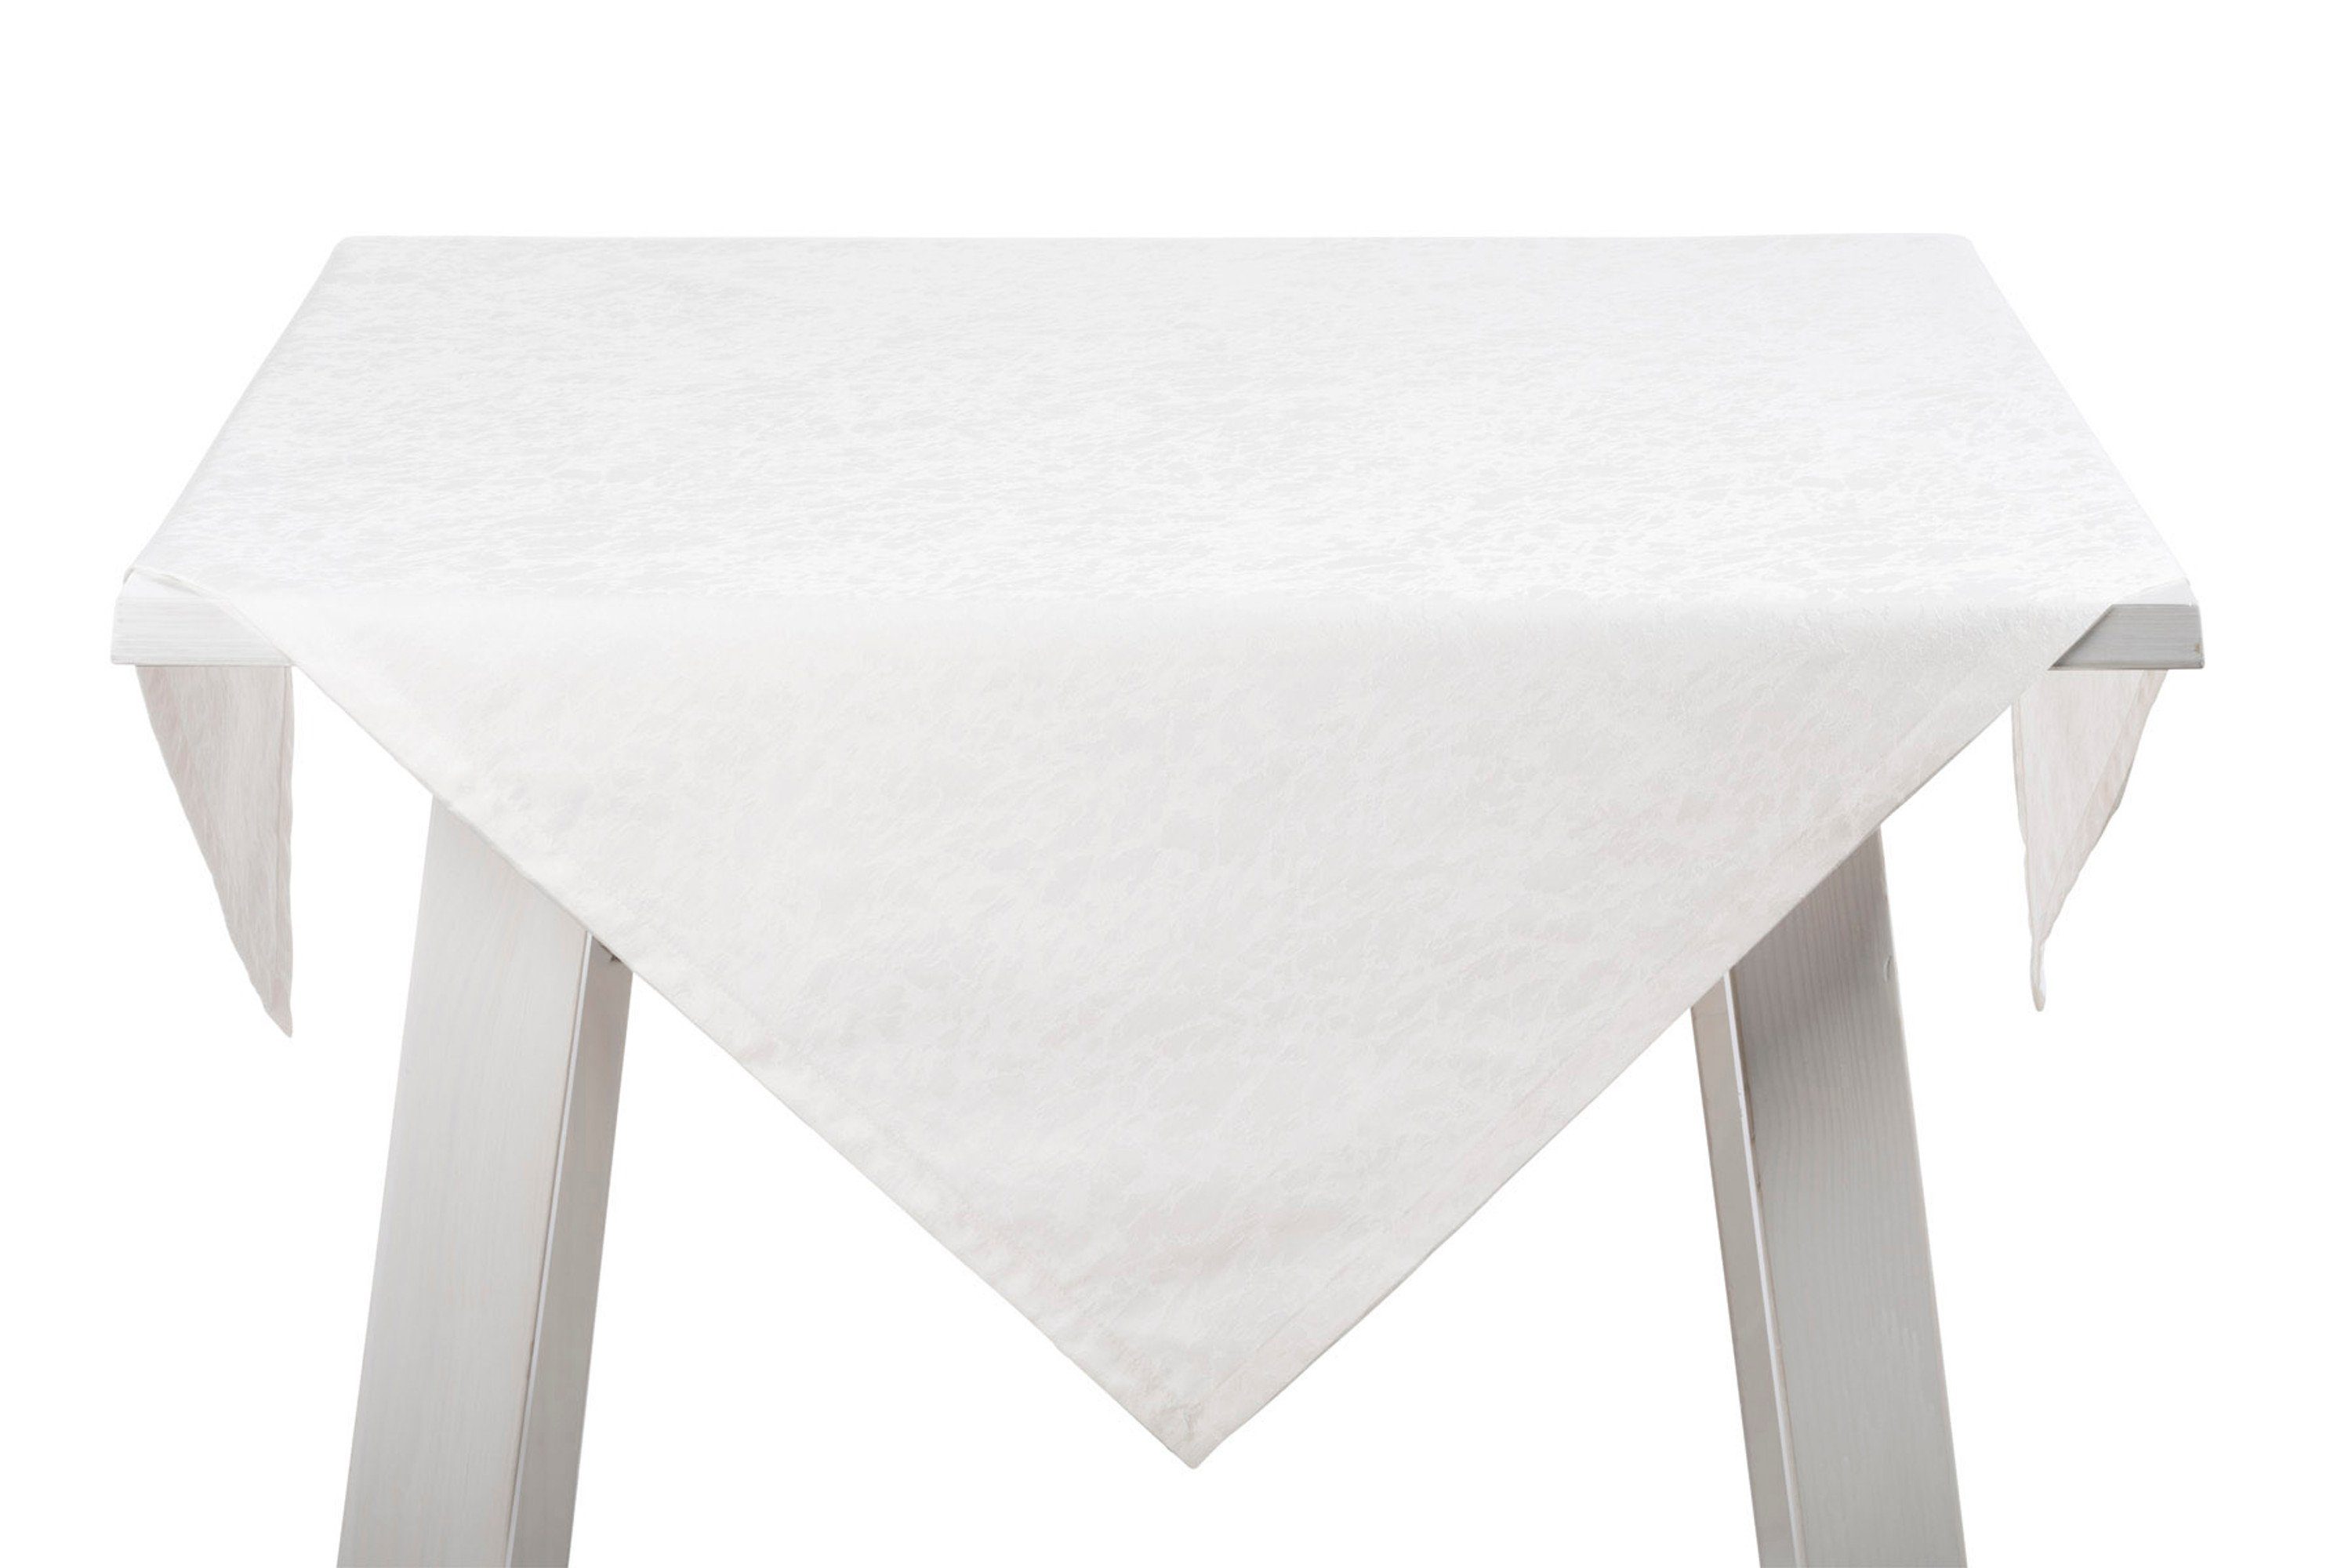 PICHLER Tischband Pichler Tischläufer Mitteldecke weiß verschiedene Größen, MARBLE, (1-tlg) Serviette brilliant